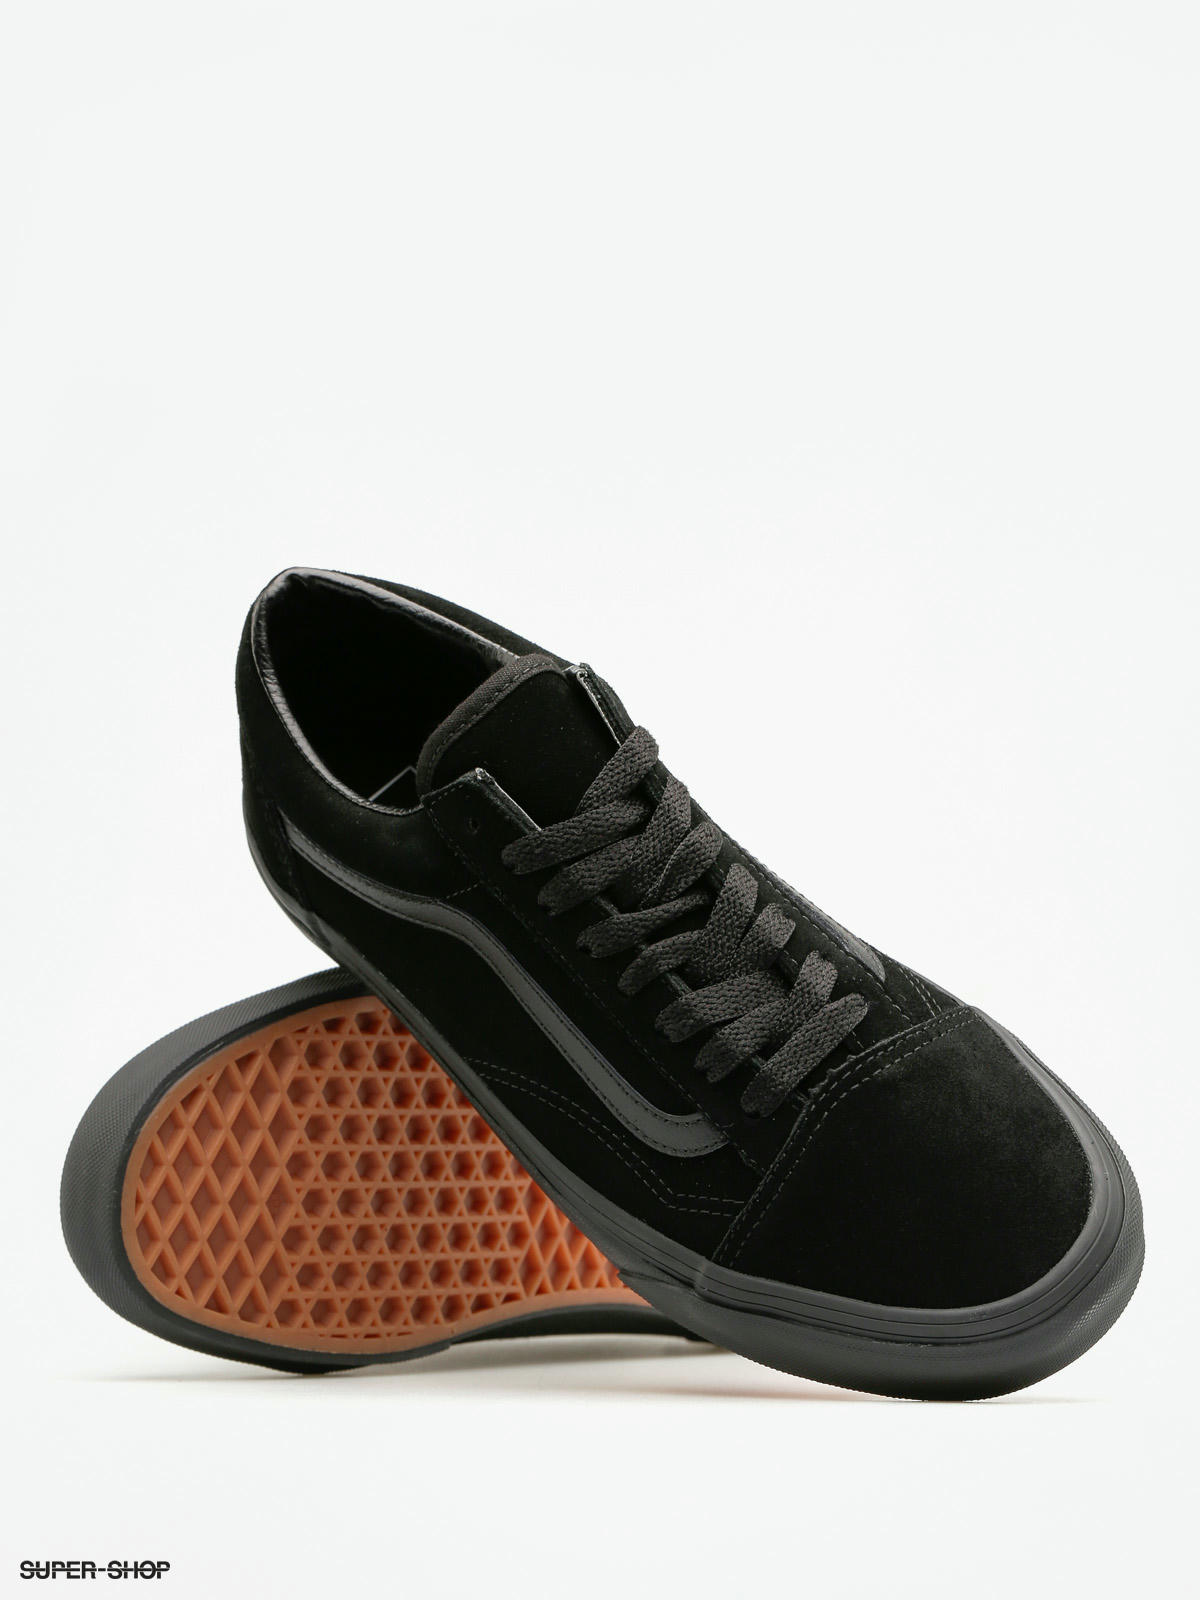 vans black suede shoes